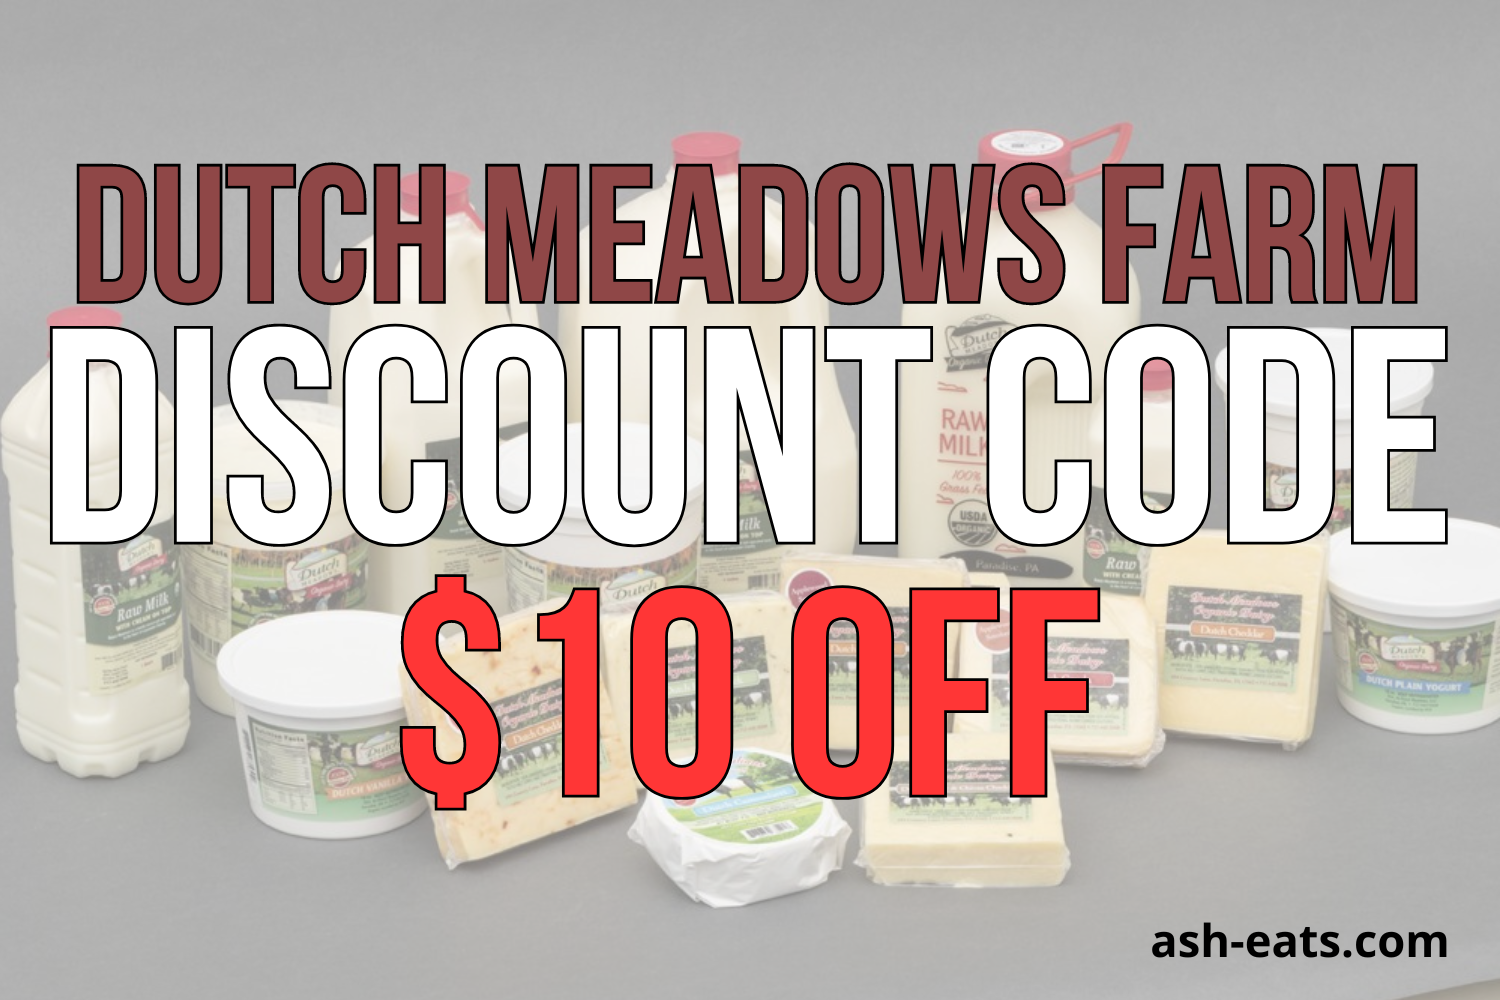 dutch meadows farm discount code